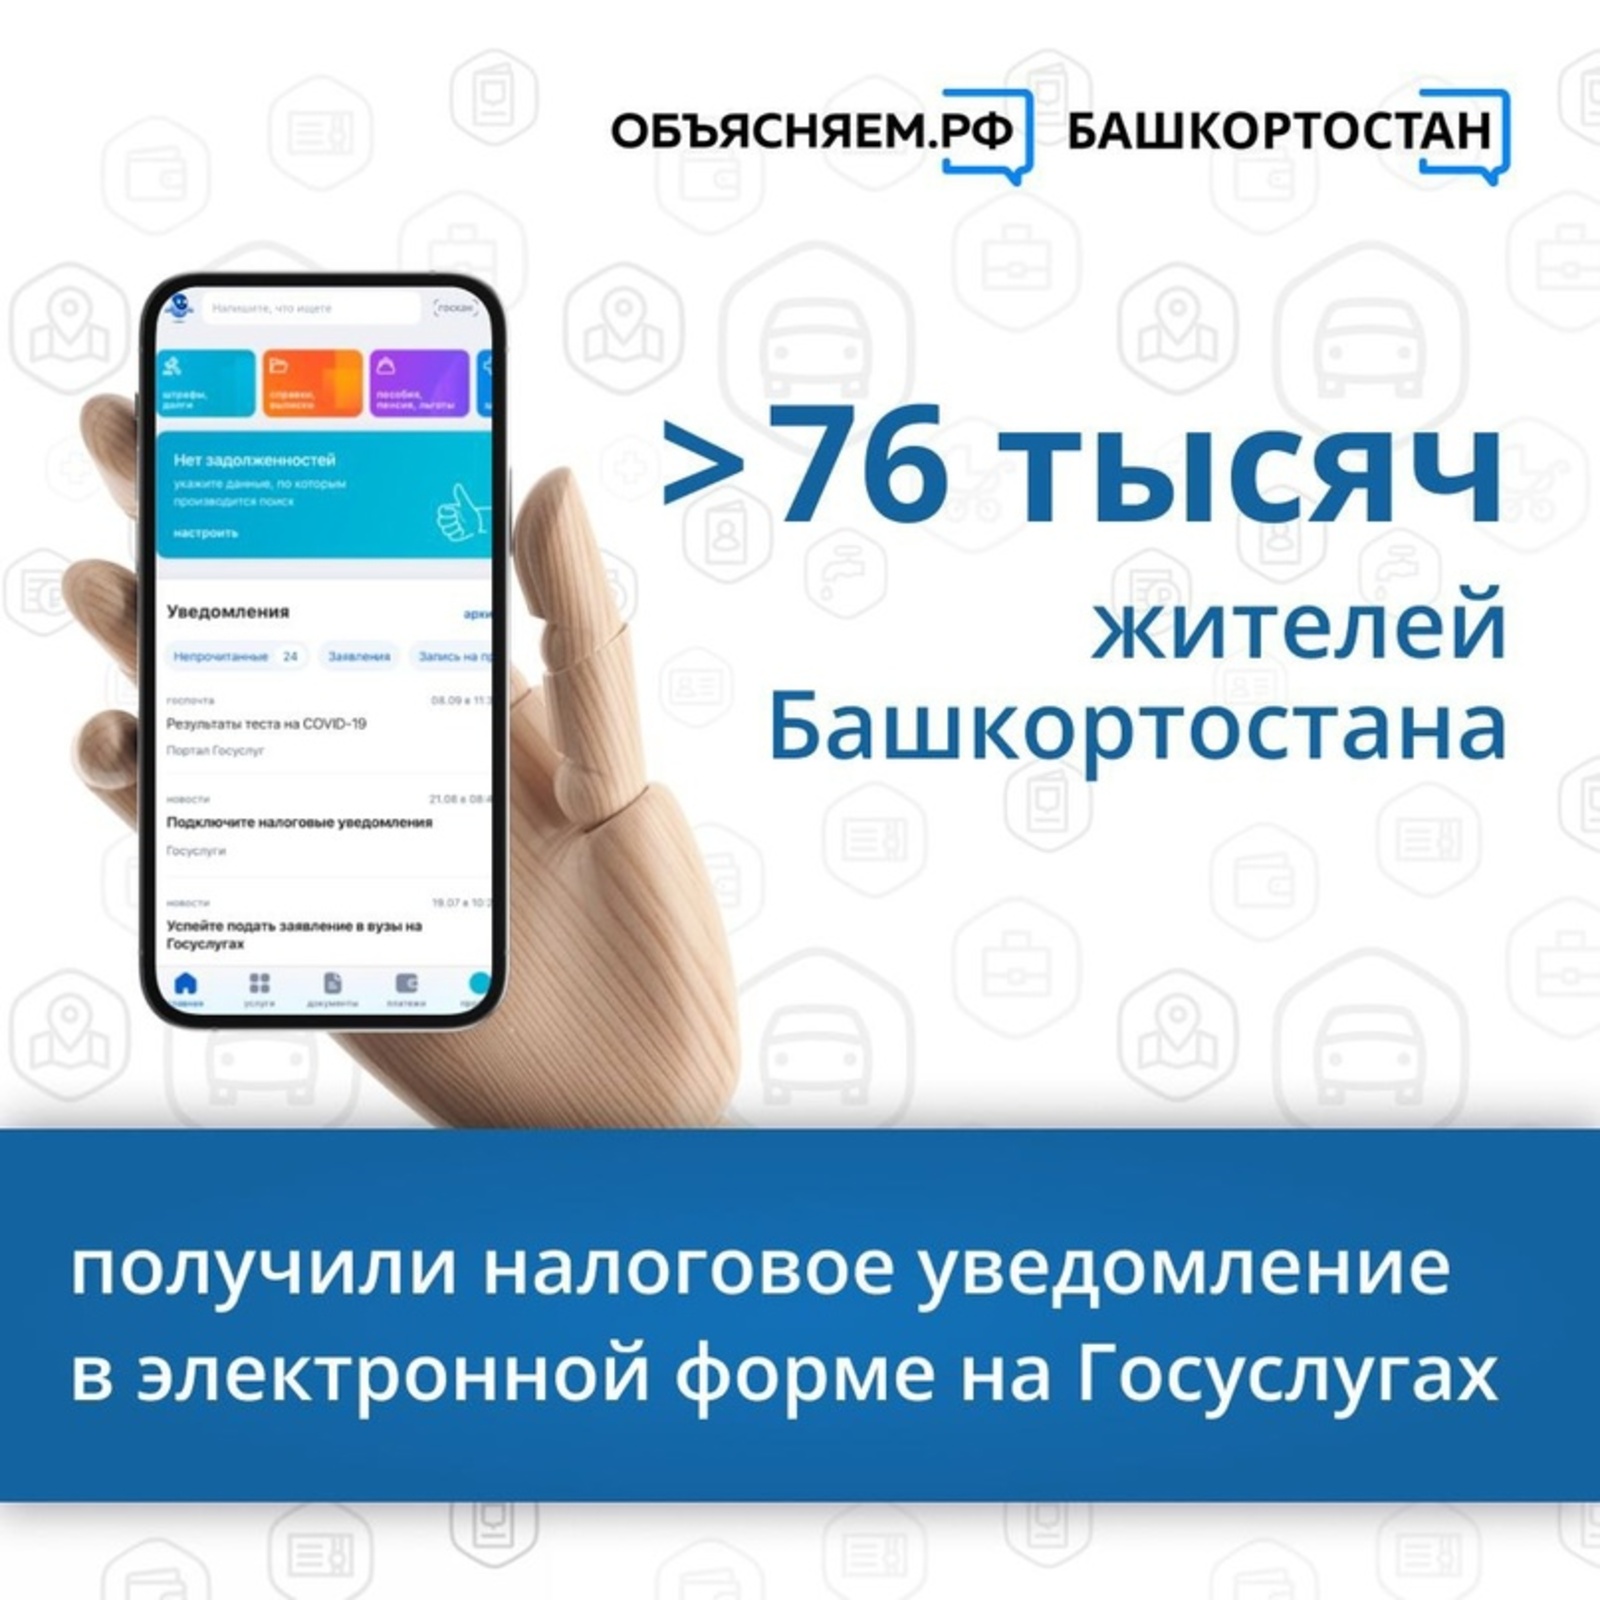 В Башкирии граждане  получают налоговые уведомления в электронной форме